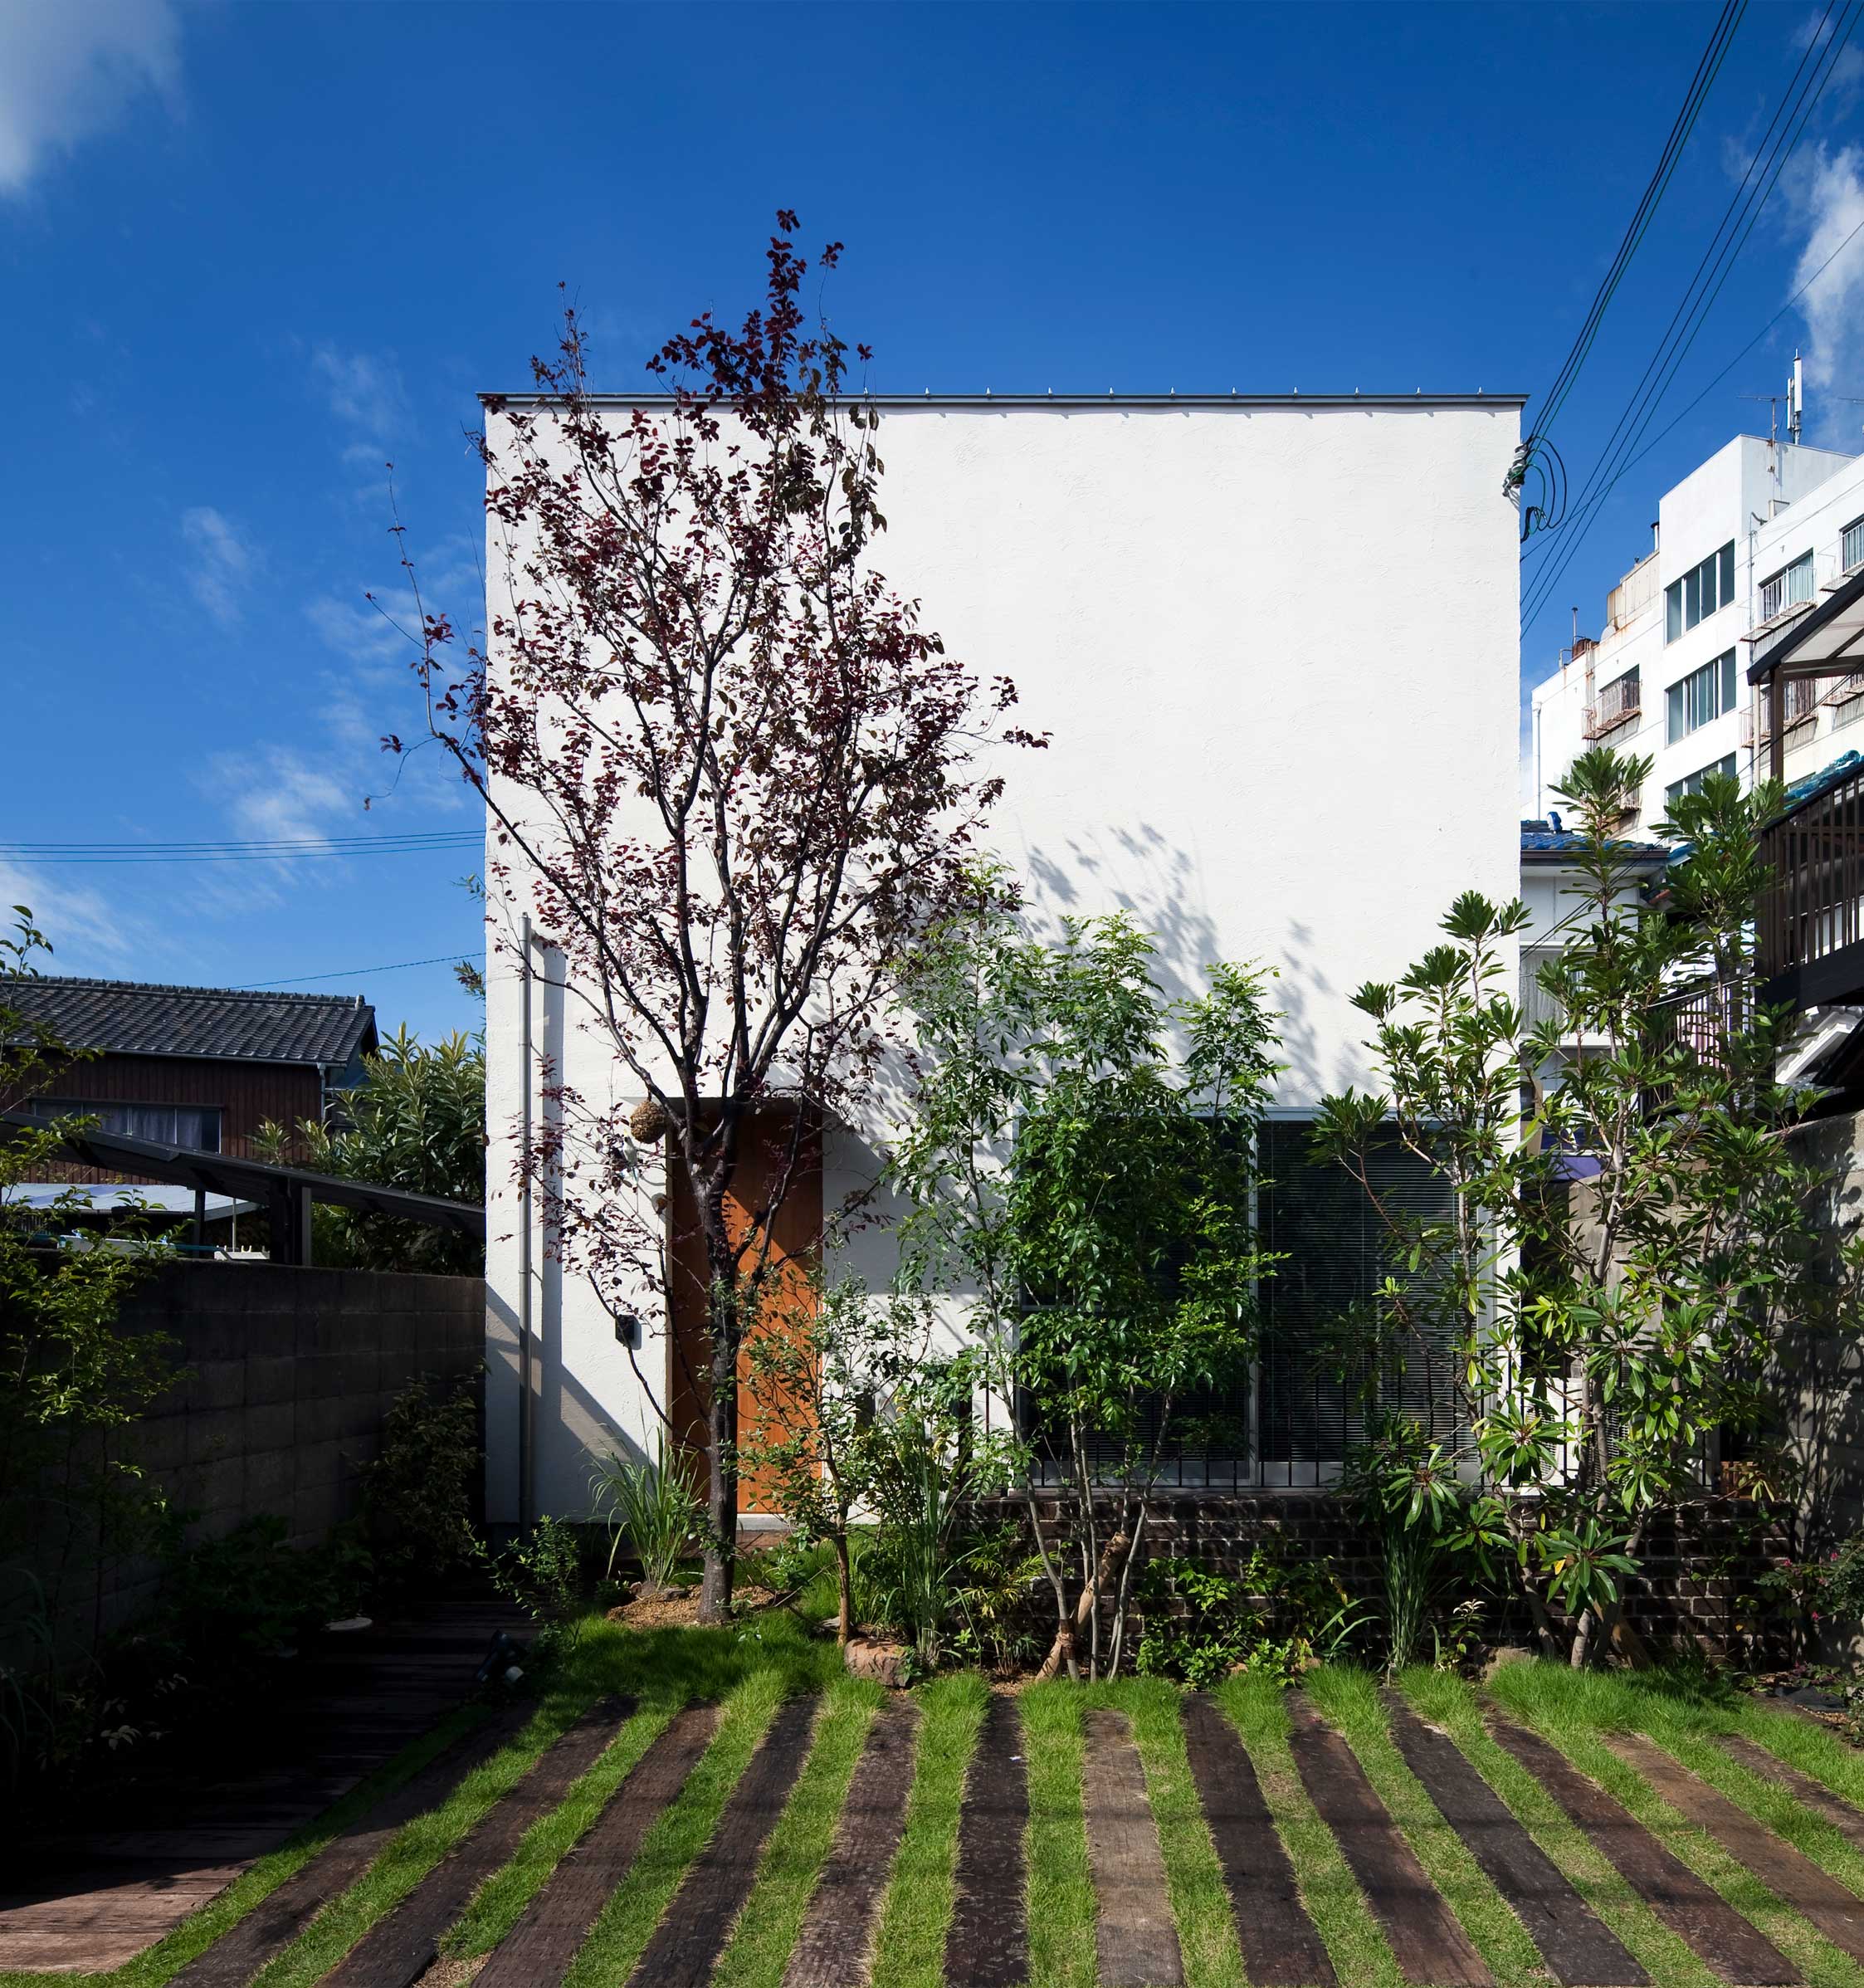 緑豊かな前庭と白い外壁のコントラスト